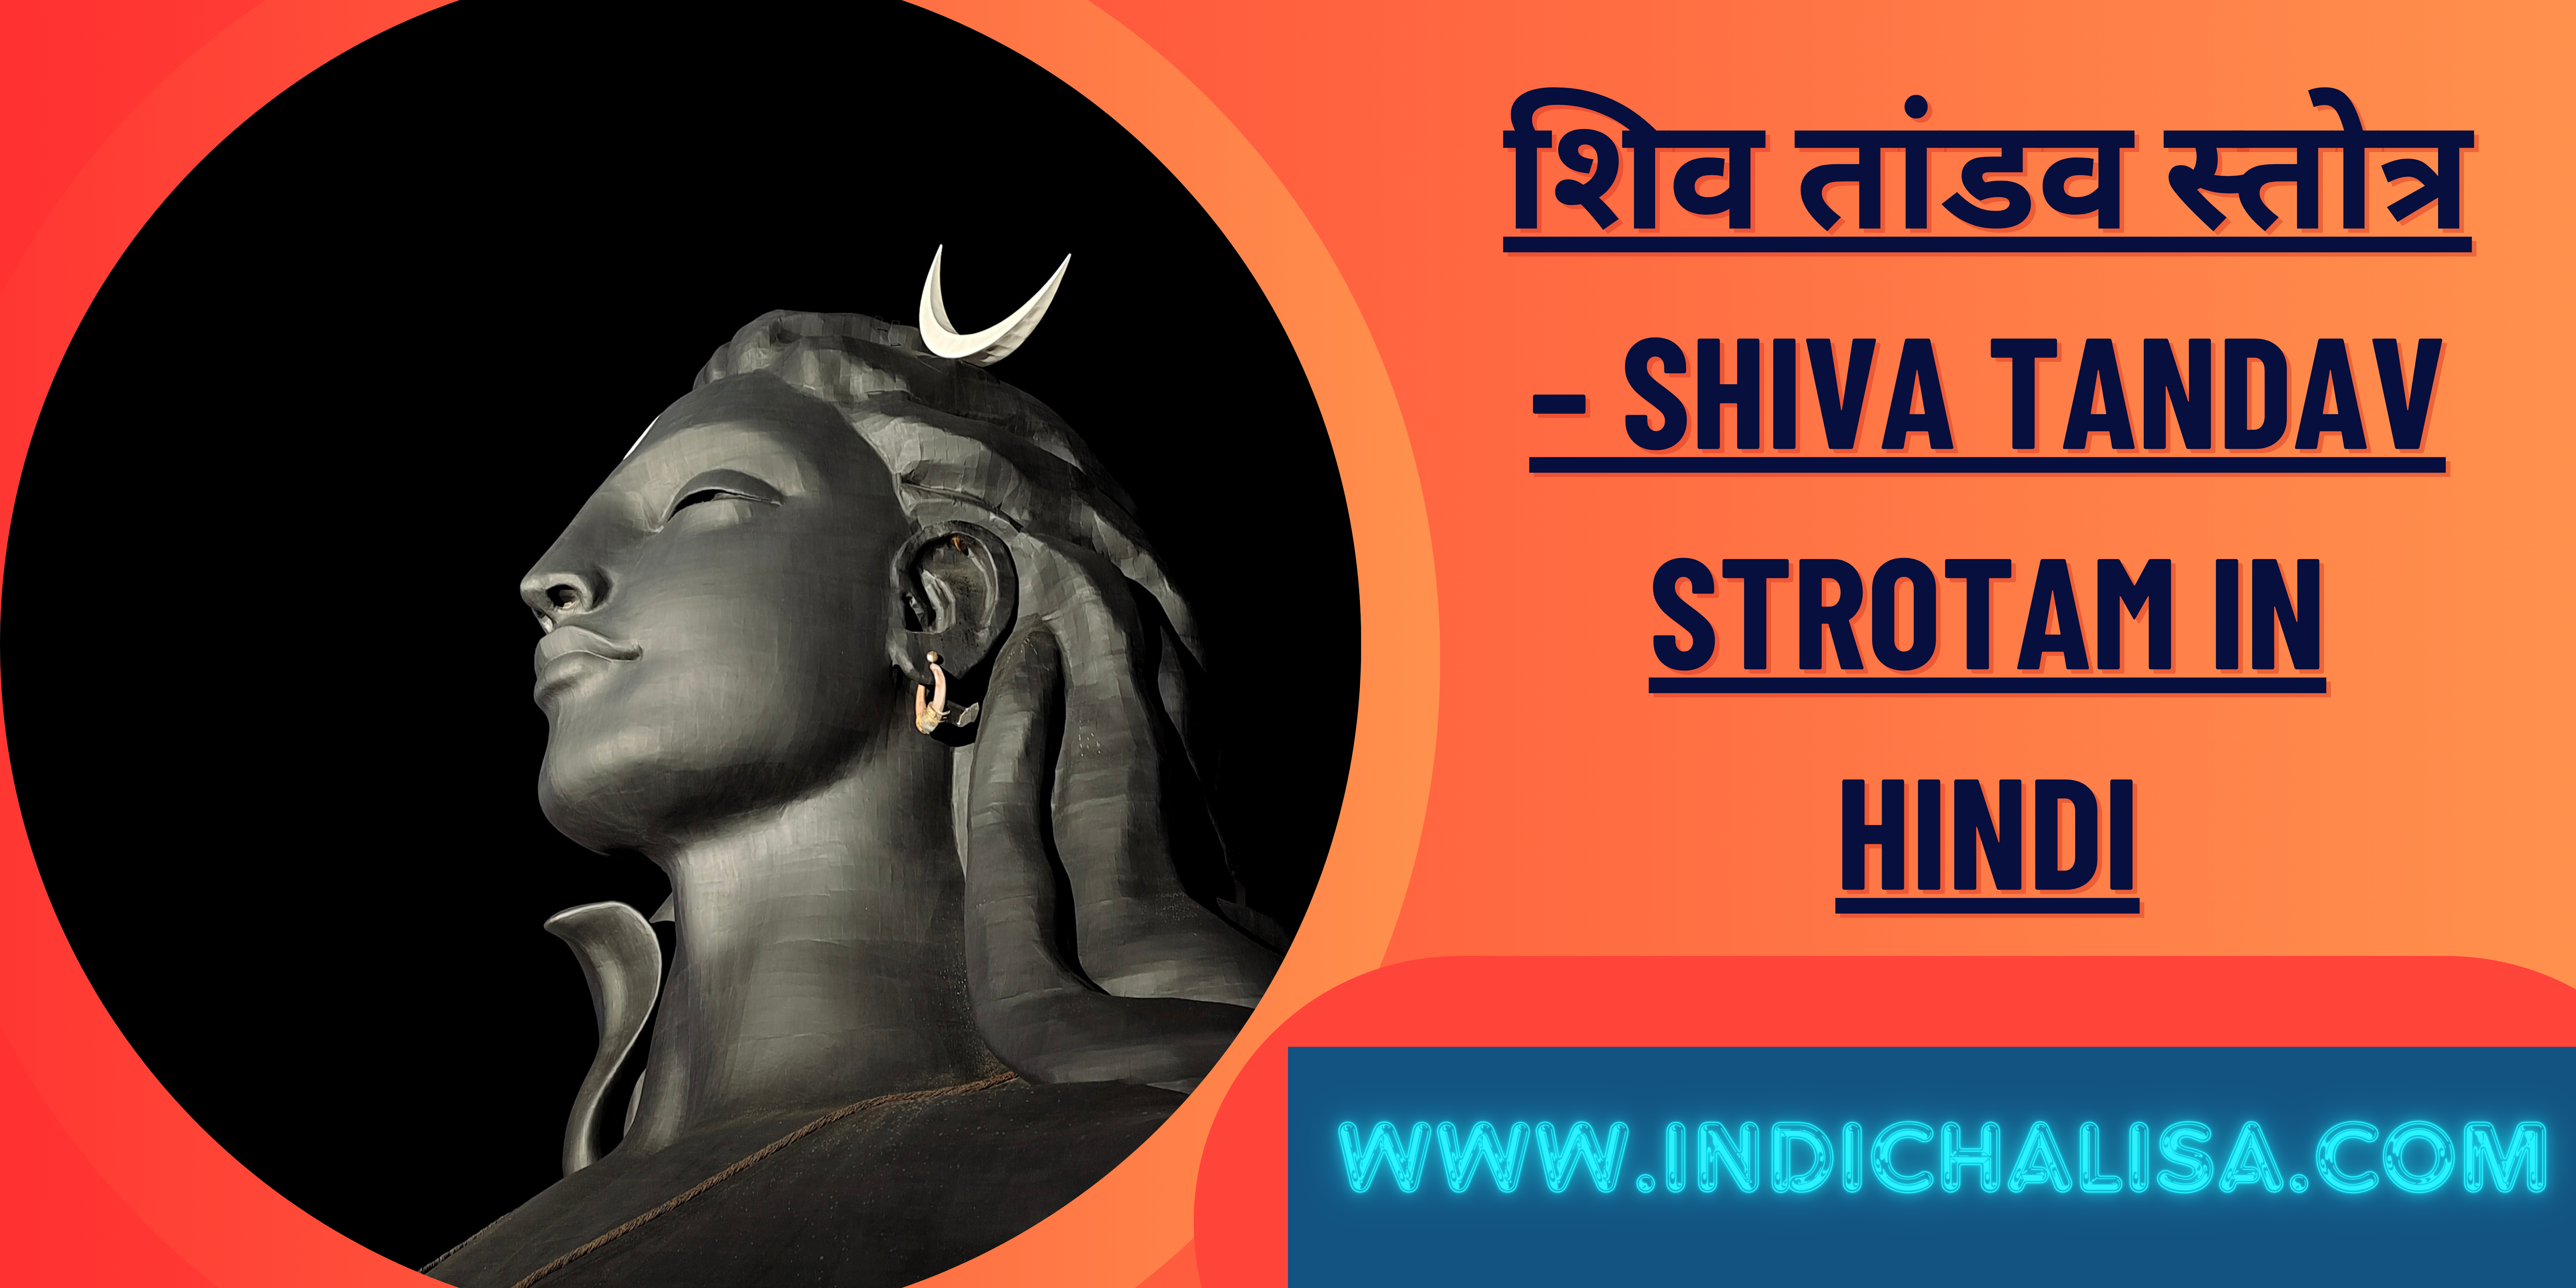 Shiva Tandav Strotam In Hindi|Shiva Tandav Strotam In Hindi|Indichalisa|Indichalisa